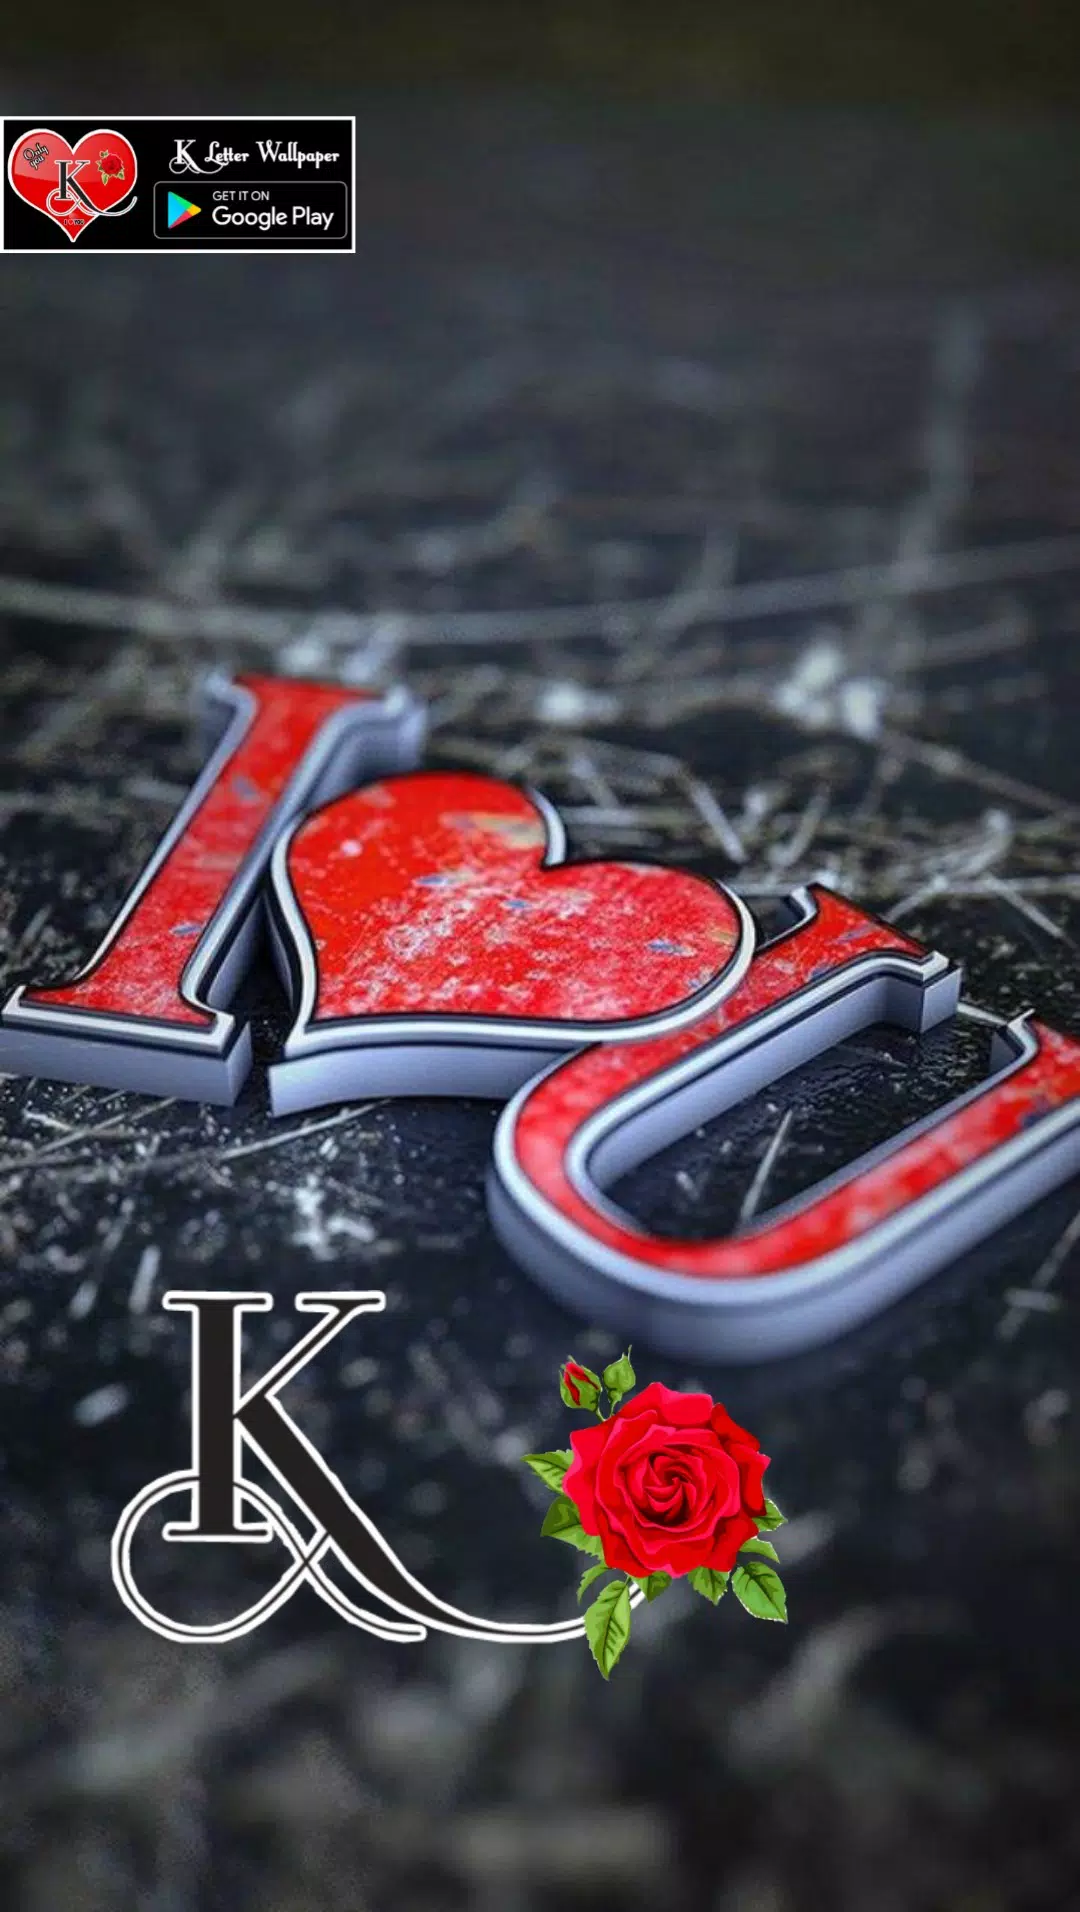 K Letter Wallpaper APK voor Android Download